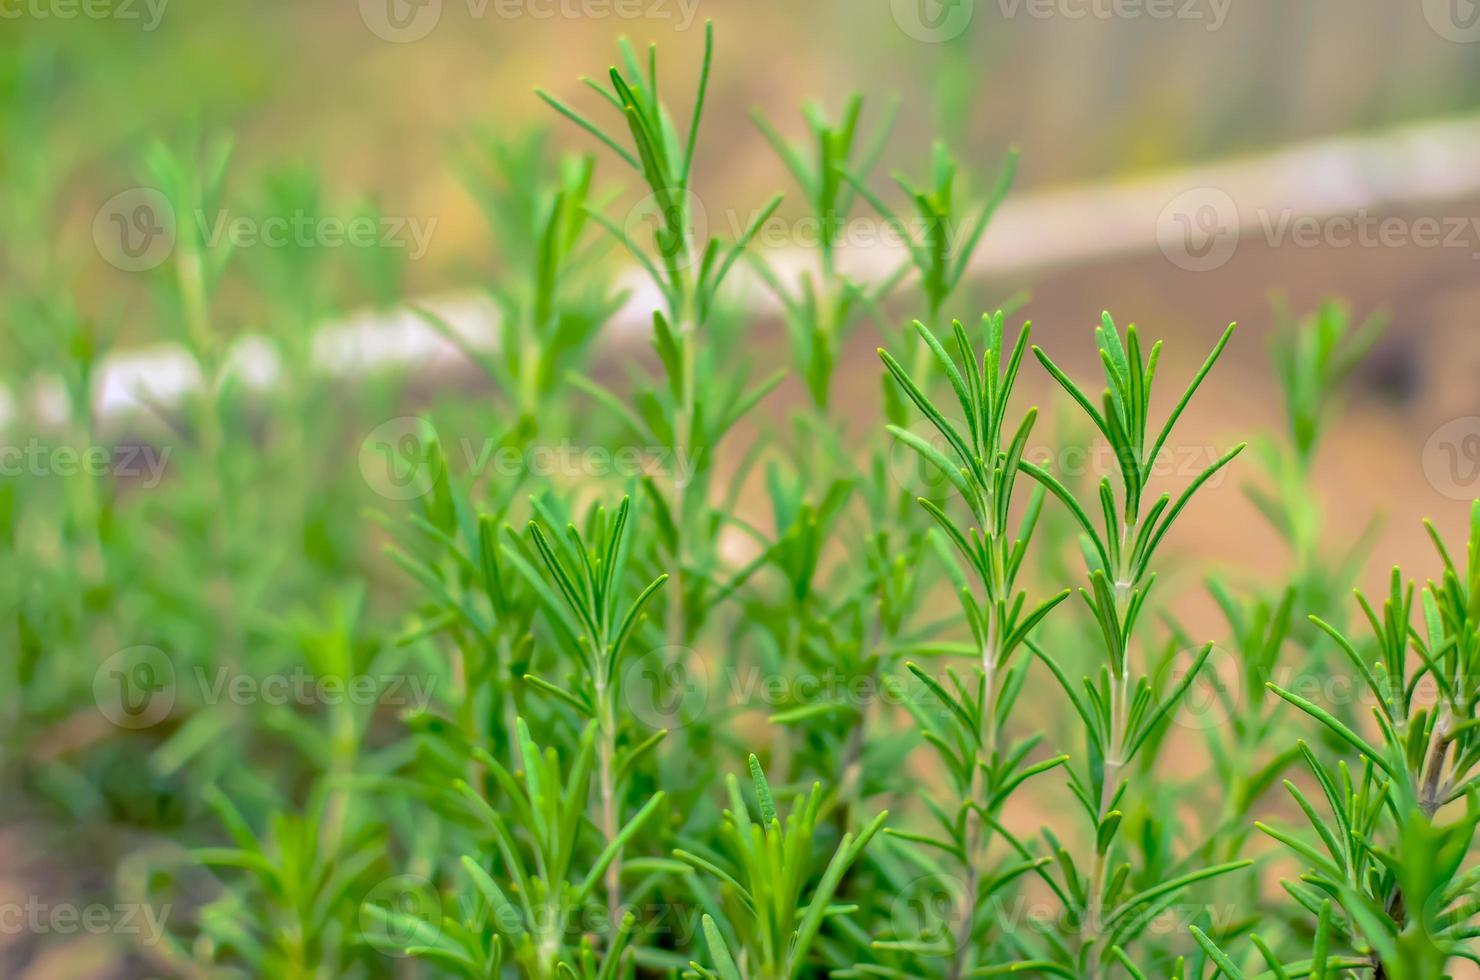 Hierba de romero verde en el jardín de verano foto